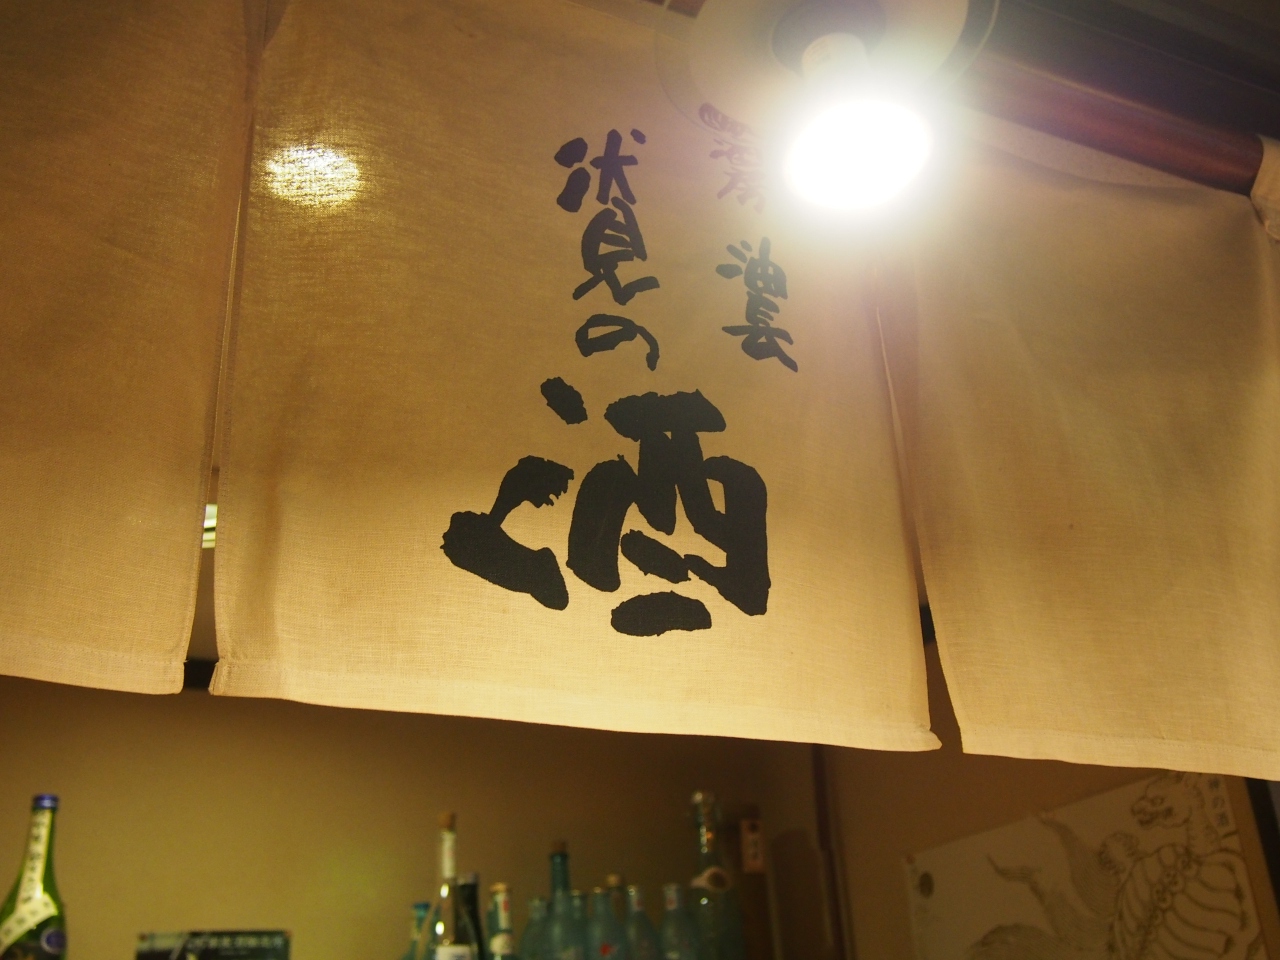 伏見の酒蔵で朝から飲んだくれる 伏見 京都 の旅行記 ブログ By Y 0236さん フォートラベル